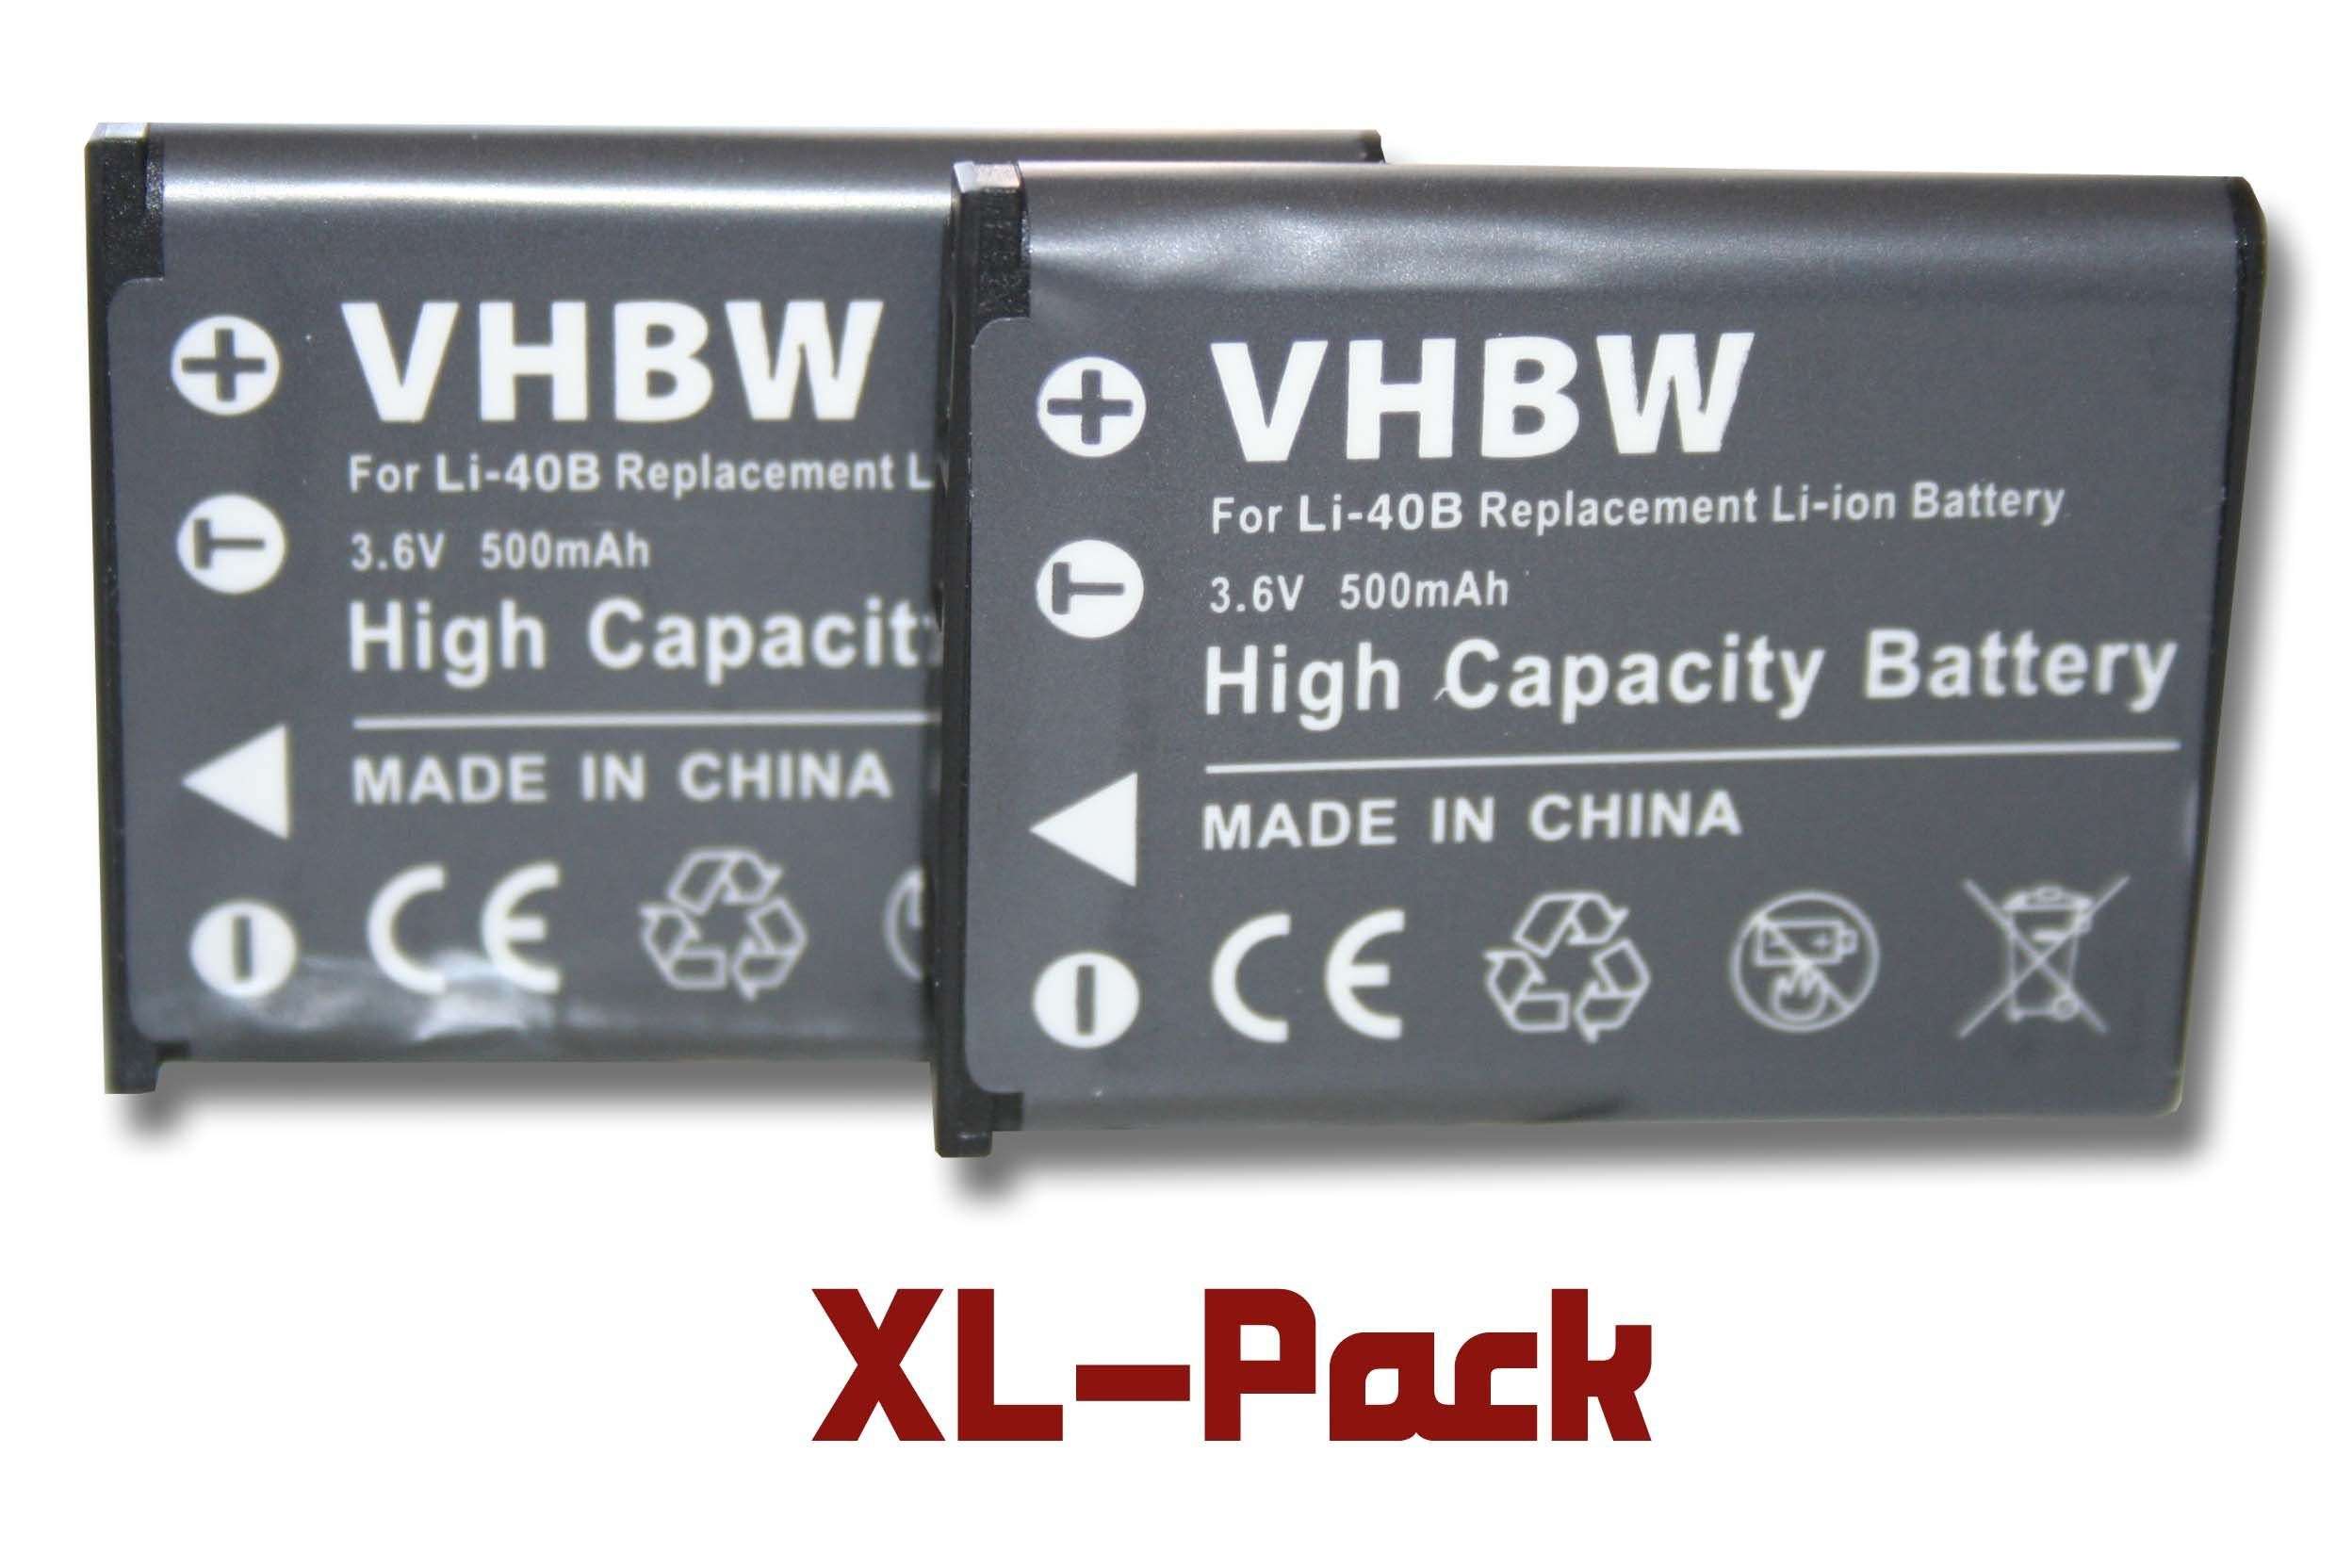 3,6V, 500 Kompakt (500mAh, MD86930, Medion Kompatibel MD87366, Kamera Kamera-Akku für vhbw mit passend / Foto mAh MD86824, Li-Ion) MD87657, MD87857